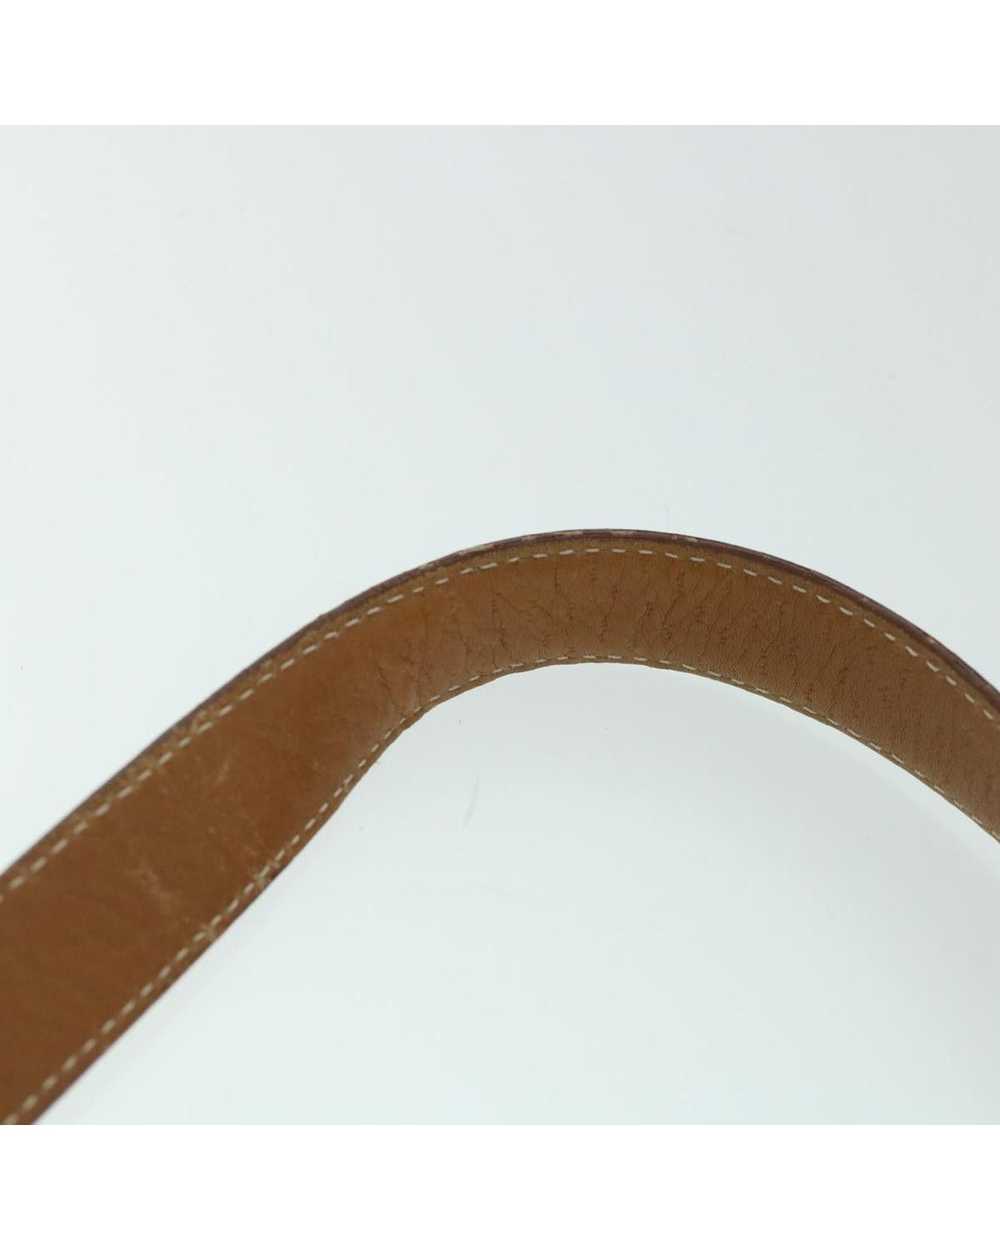 Salvatore Ferragamo Elegant Brown Leather Bag - image 8